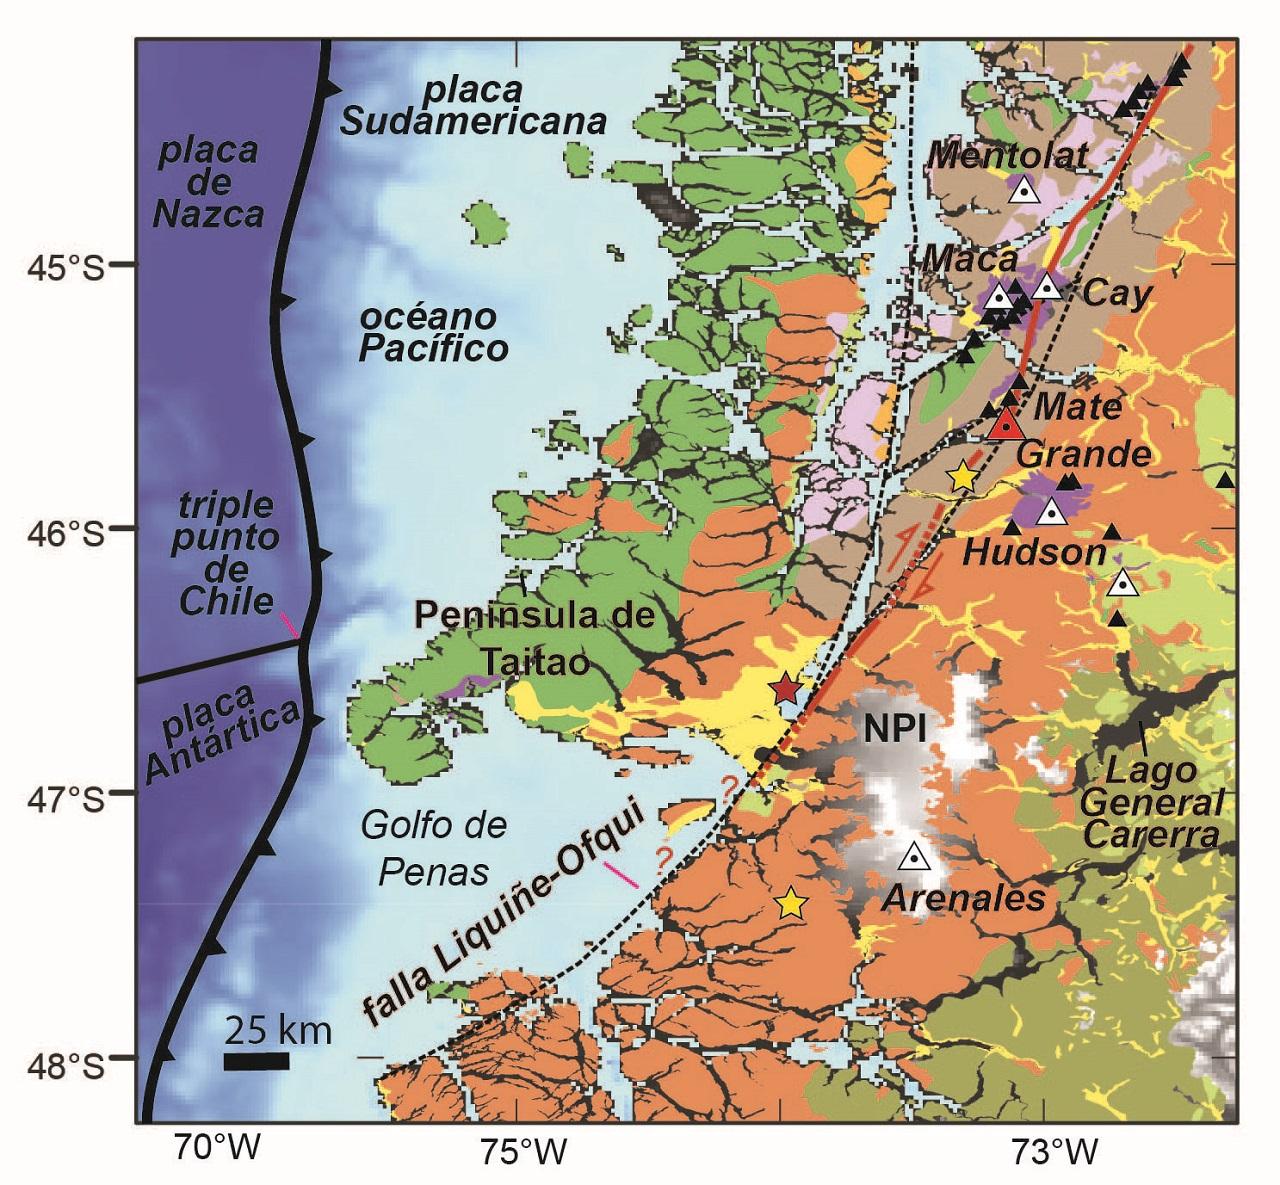 Entorno local y geología de la Falla Liquiñe-Ofqui. Al sur, se observa el rastro principal mapeado de la Falla, la correlación con los volcanes junto a la ubicación del Volcán Mate Grande (VMG) y la caldera que fueron descubiertos durante esta investigación (1: 1,000,000; SERNAGEOMIN, 2003).